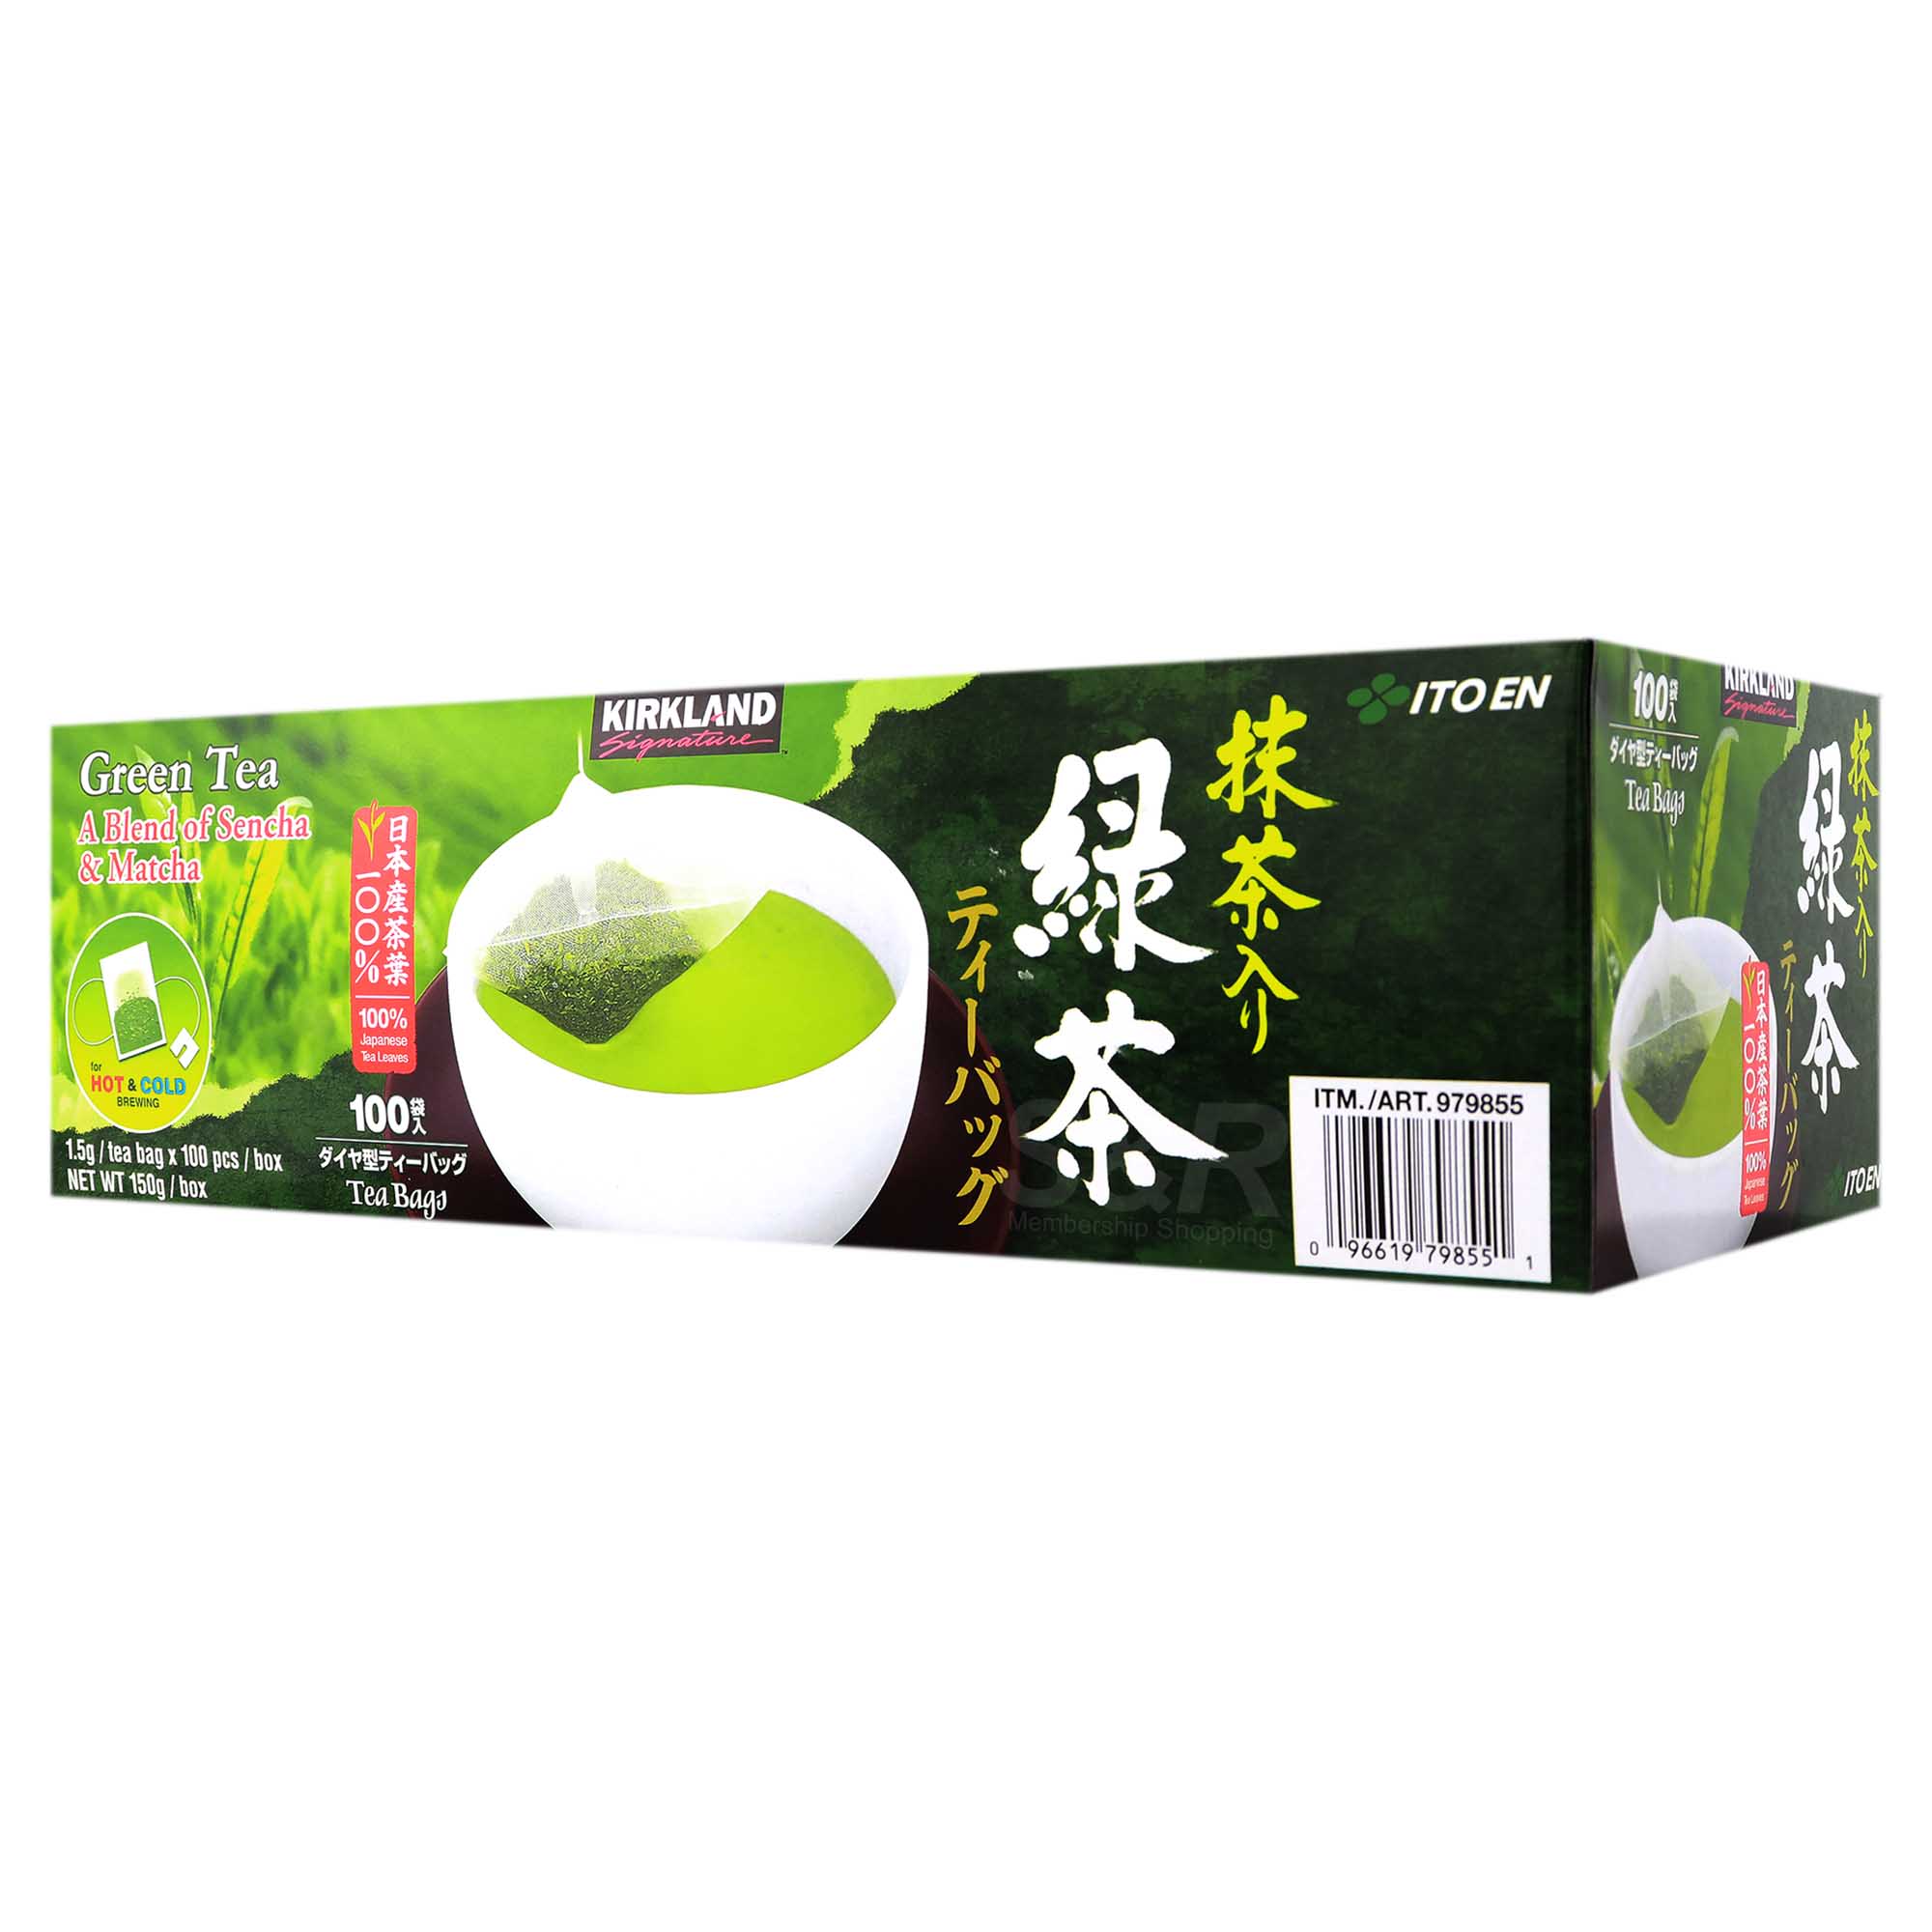 Ito En Green Tea